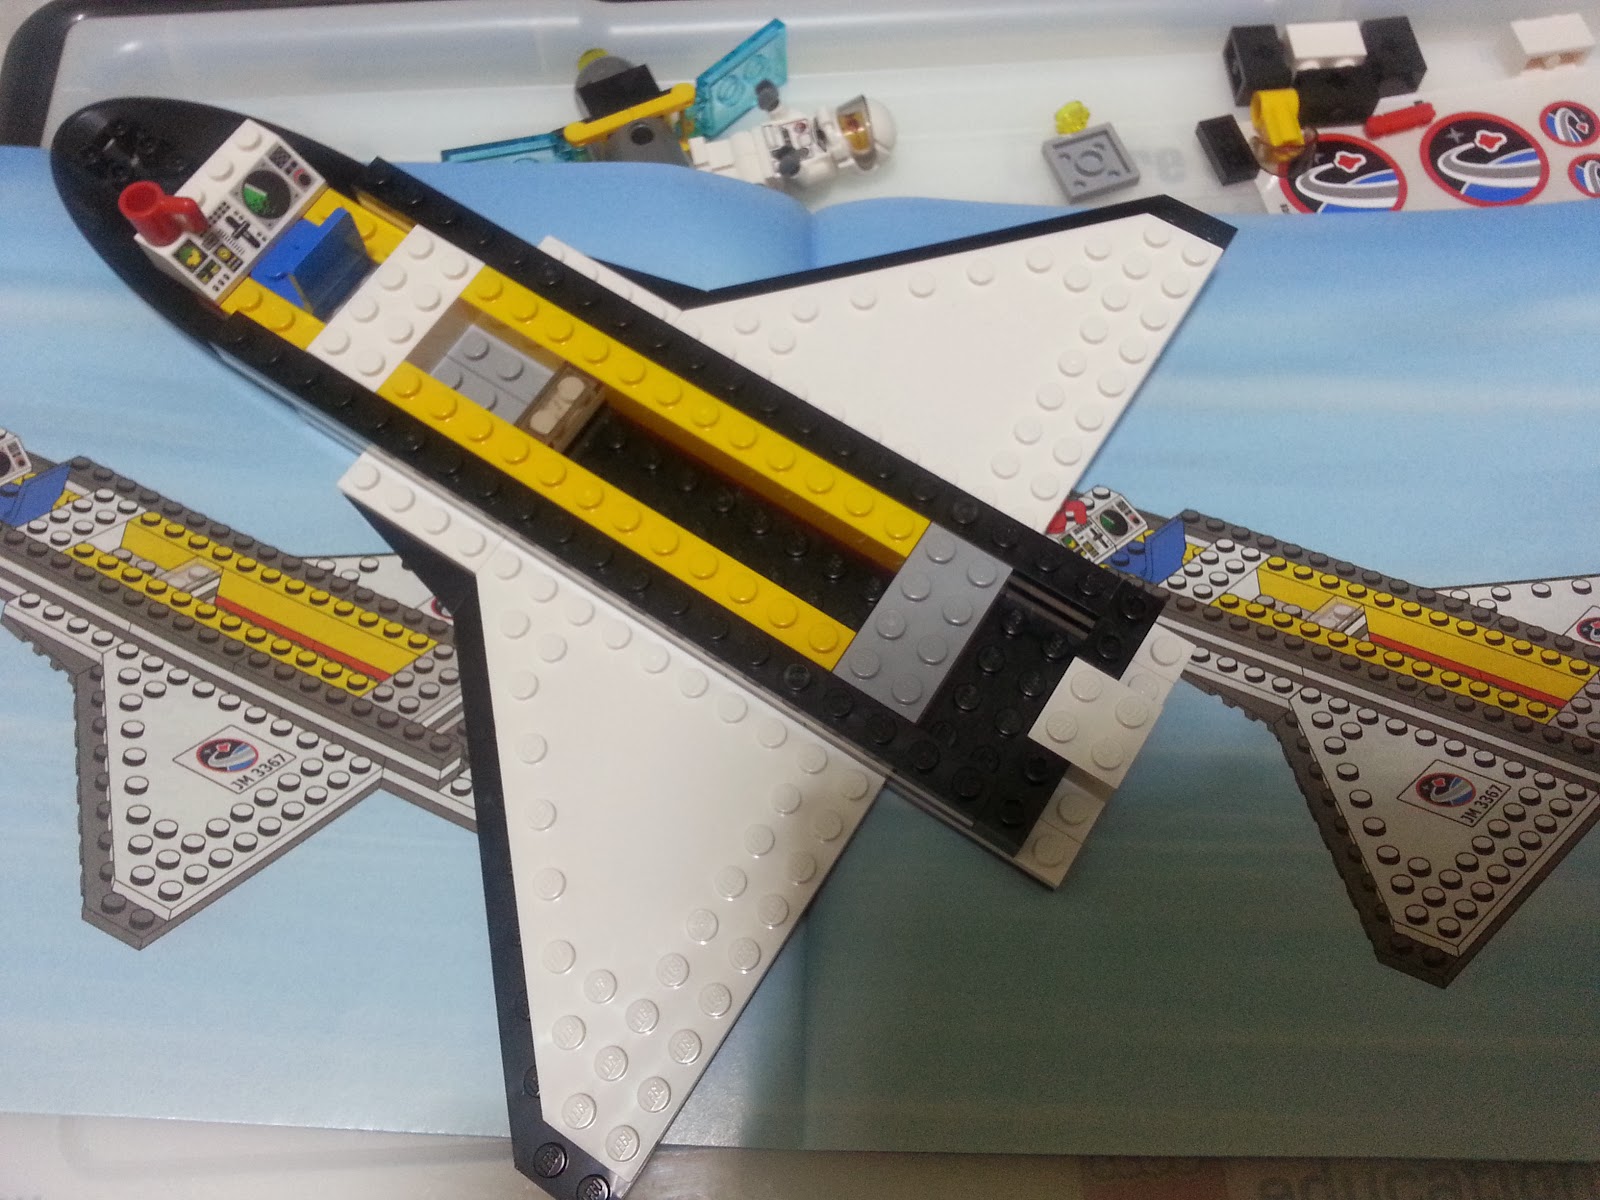 工作と小物のがらくた部屋: LEGO CITY 3367 Space Shuttle